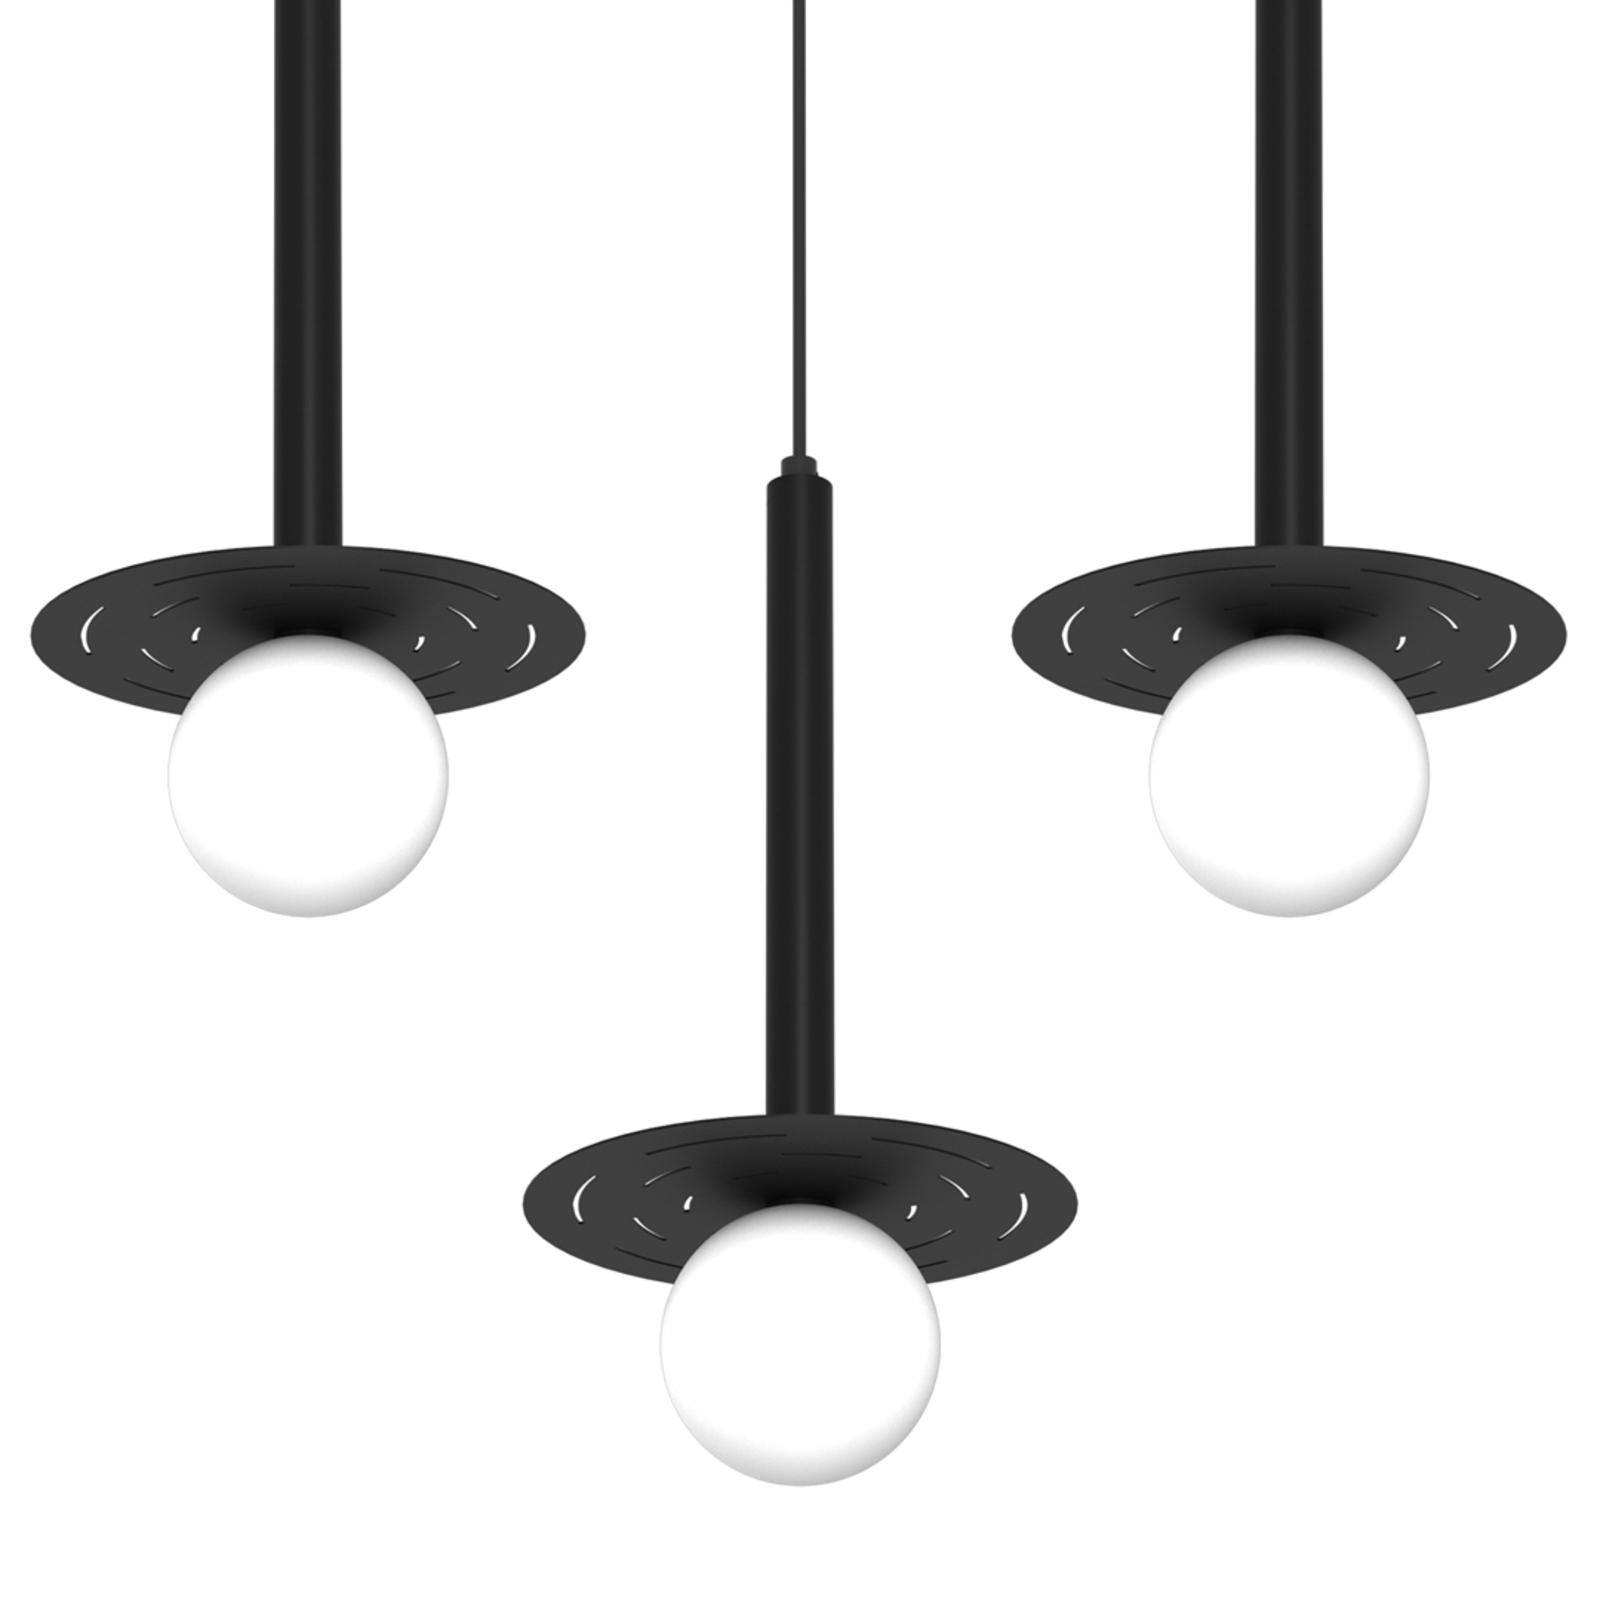 Futura pendant light, black/white, 3-bulb